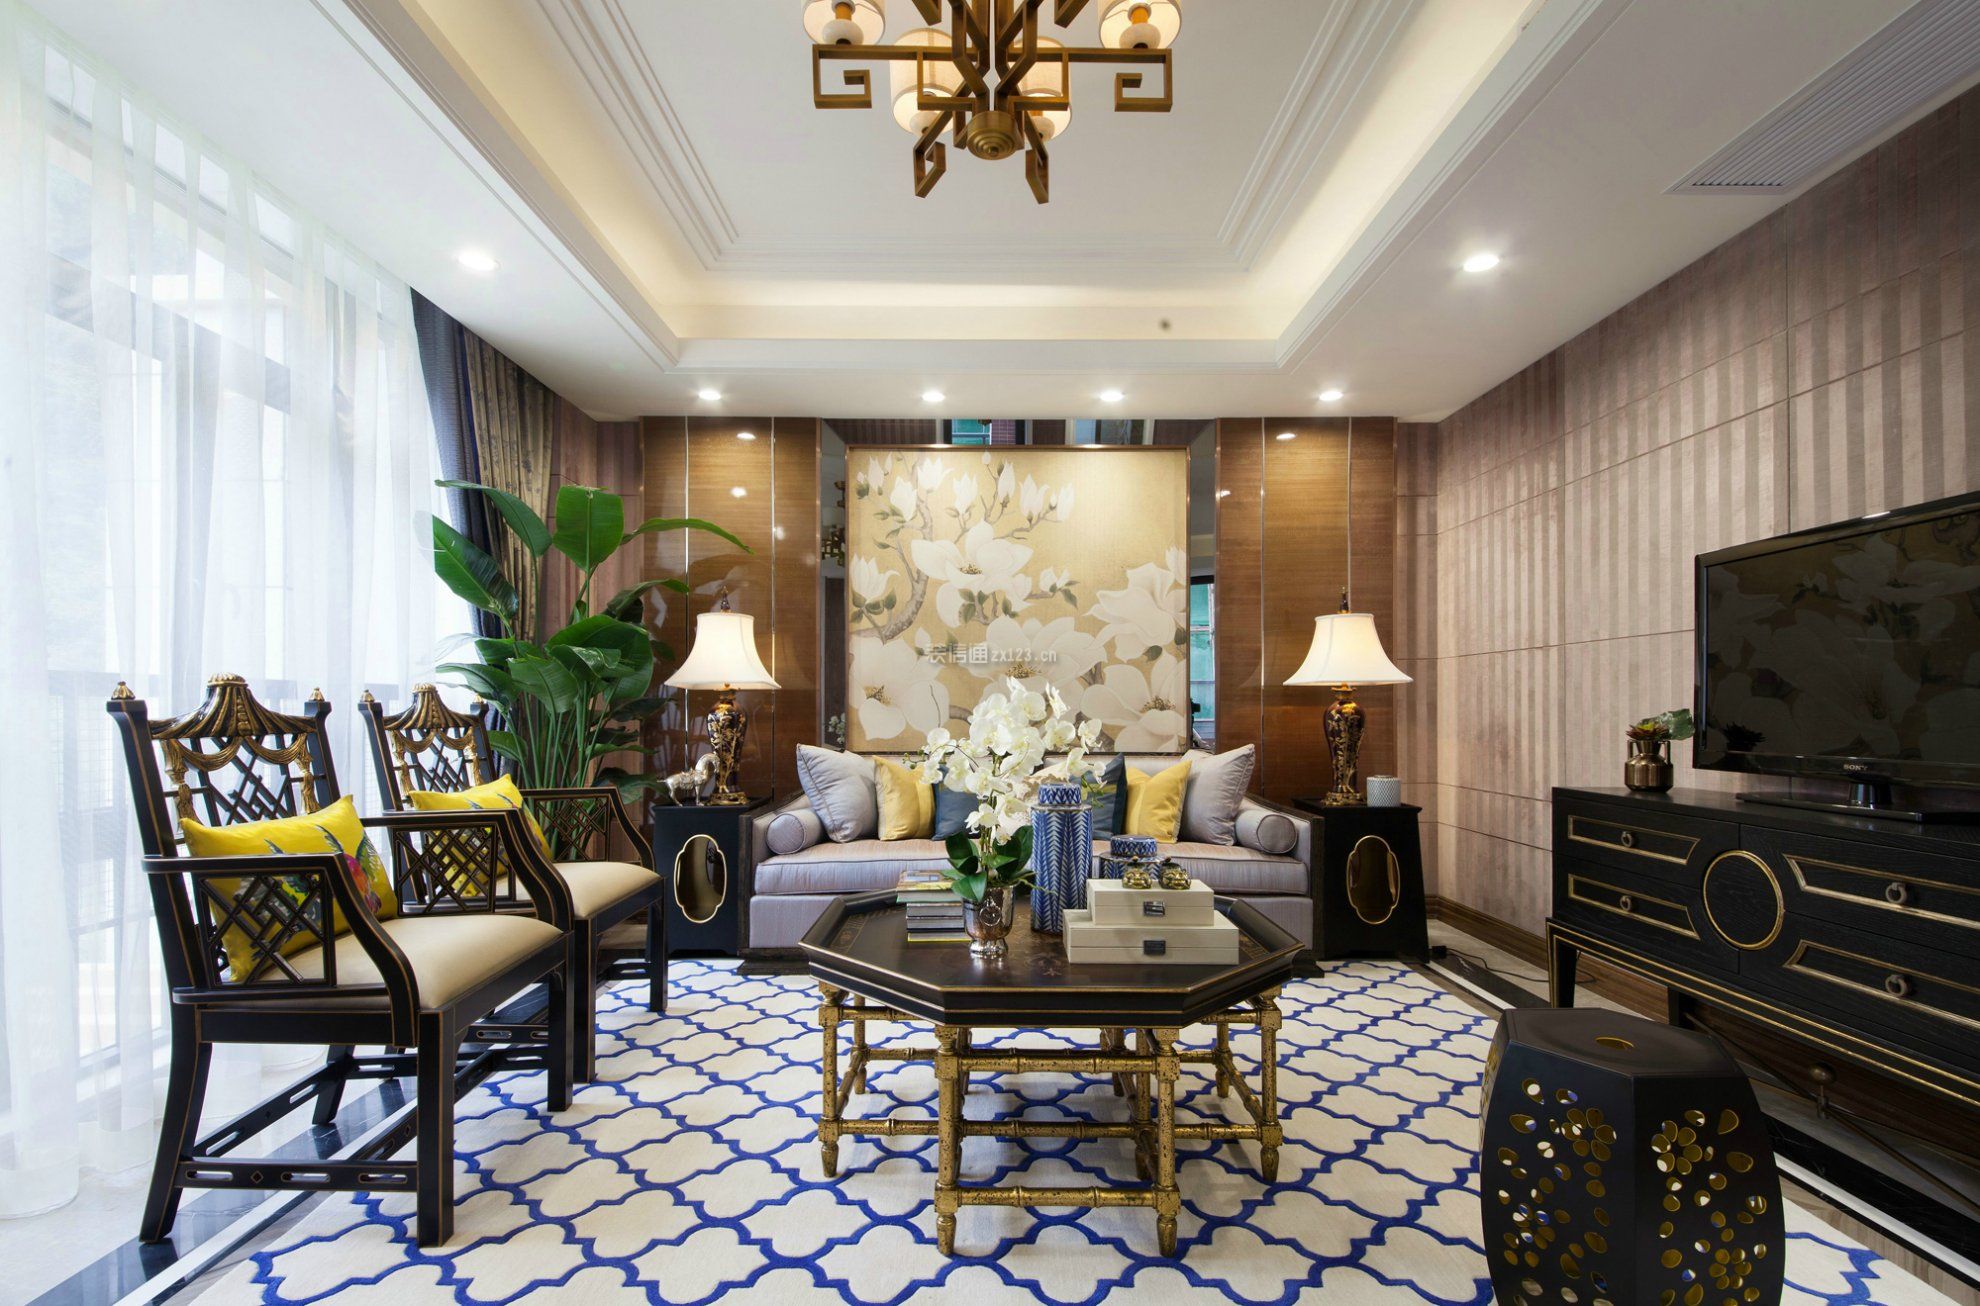 两层别墅会客厅室内地毯装修布置效果图